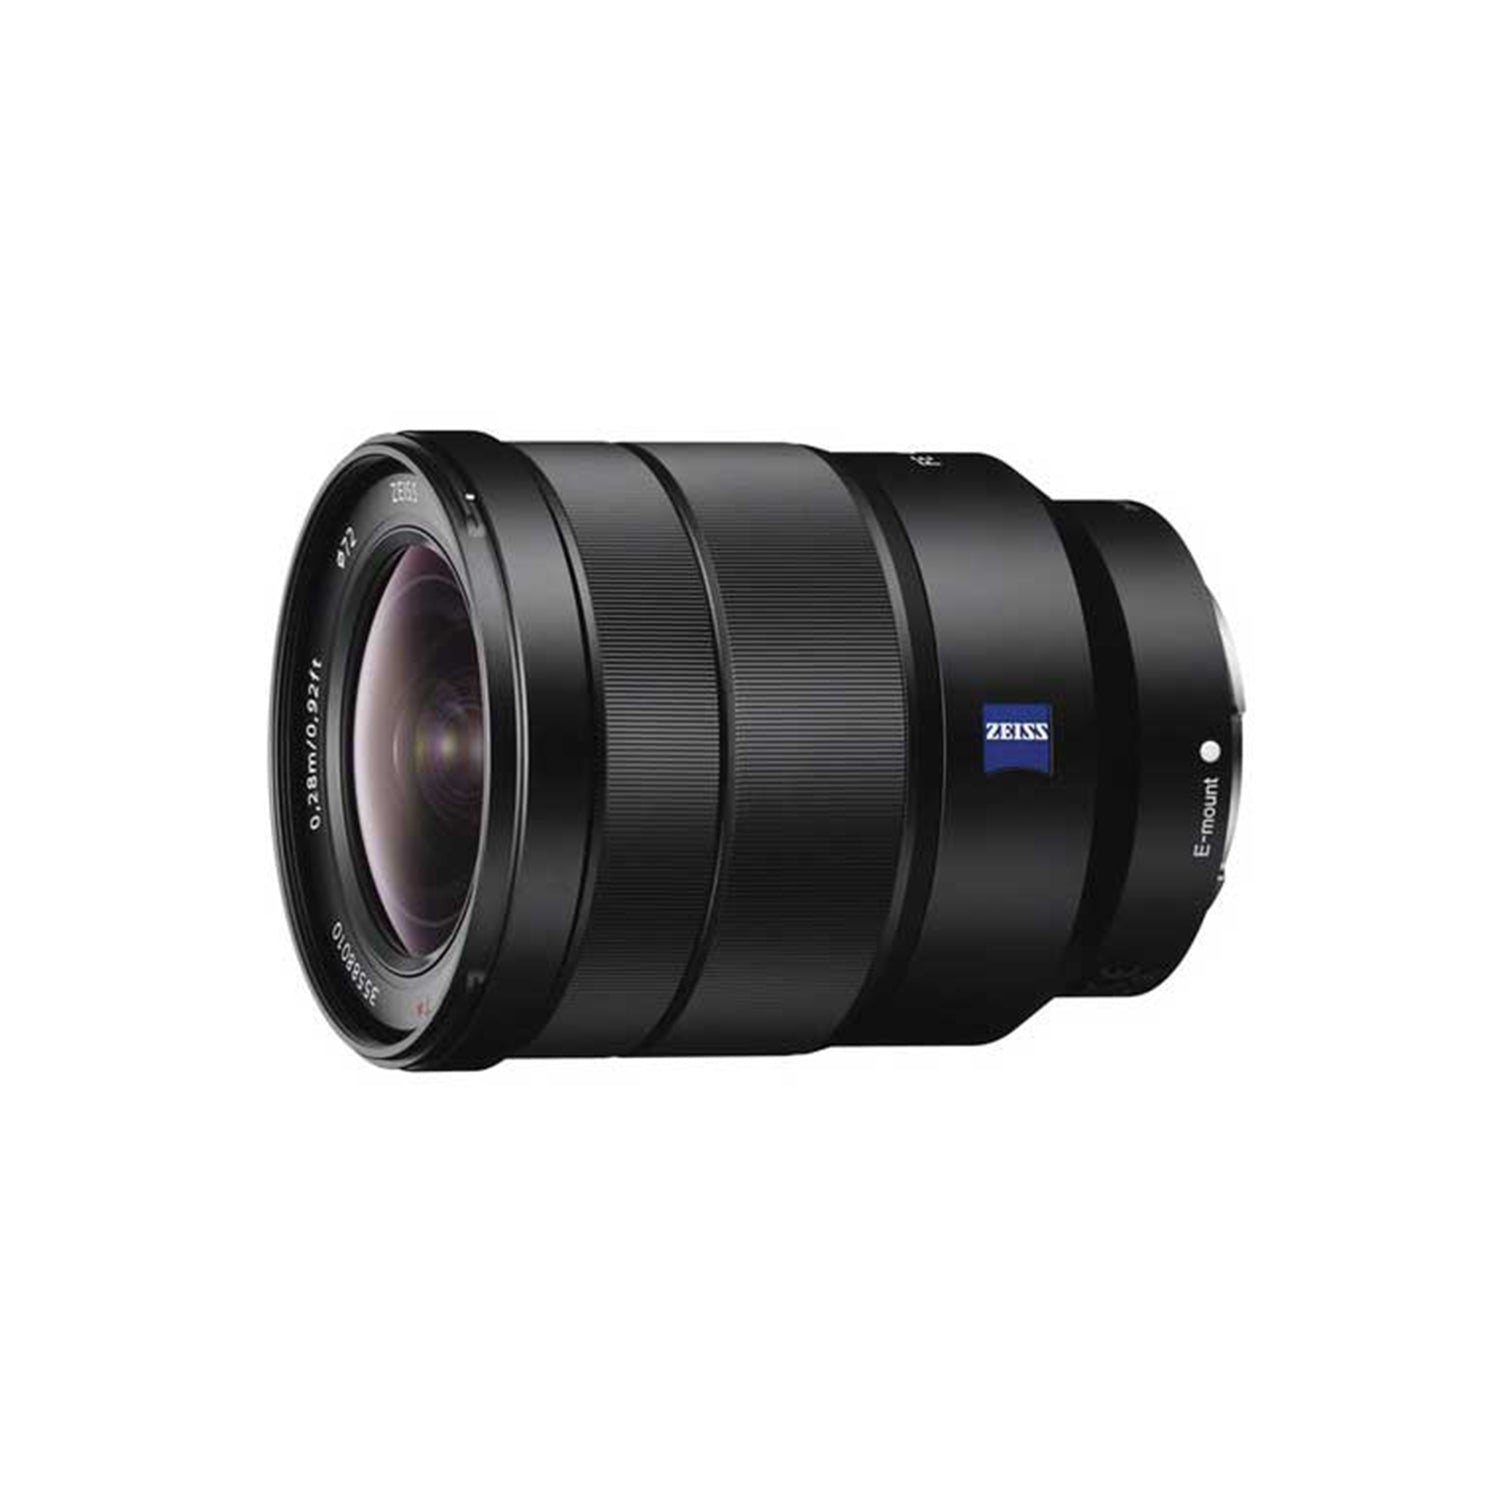 Sony FE 16-35mm f/4 ZA OSS Vario-Tessar Lens